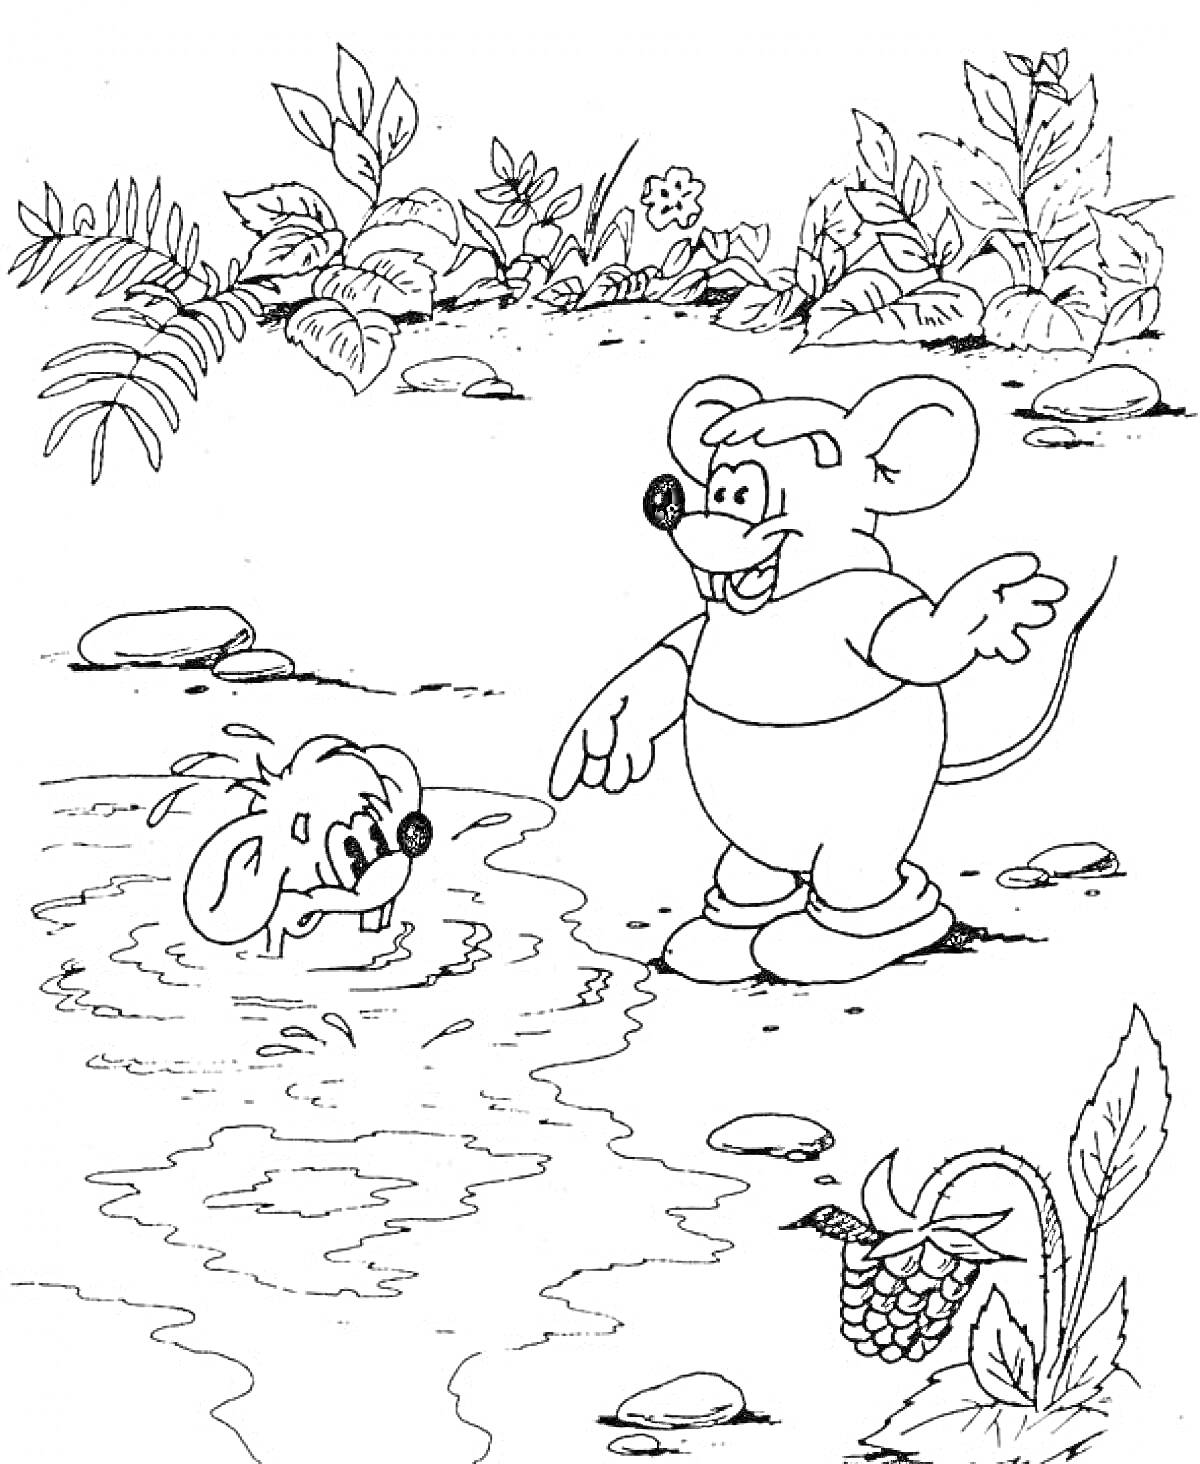 Мышонок показывает направление другому мышонку, купающемуся в пруду; на заднем плане кусты и растения, на переднем плане малина